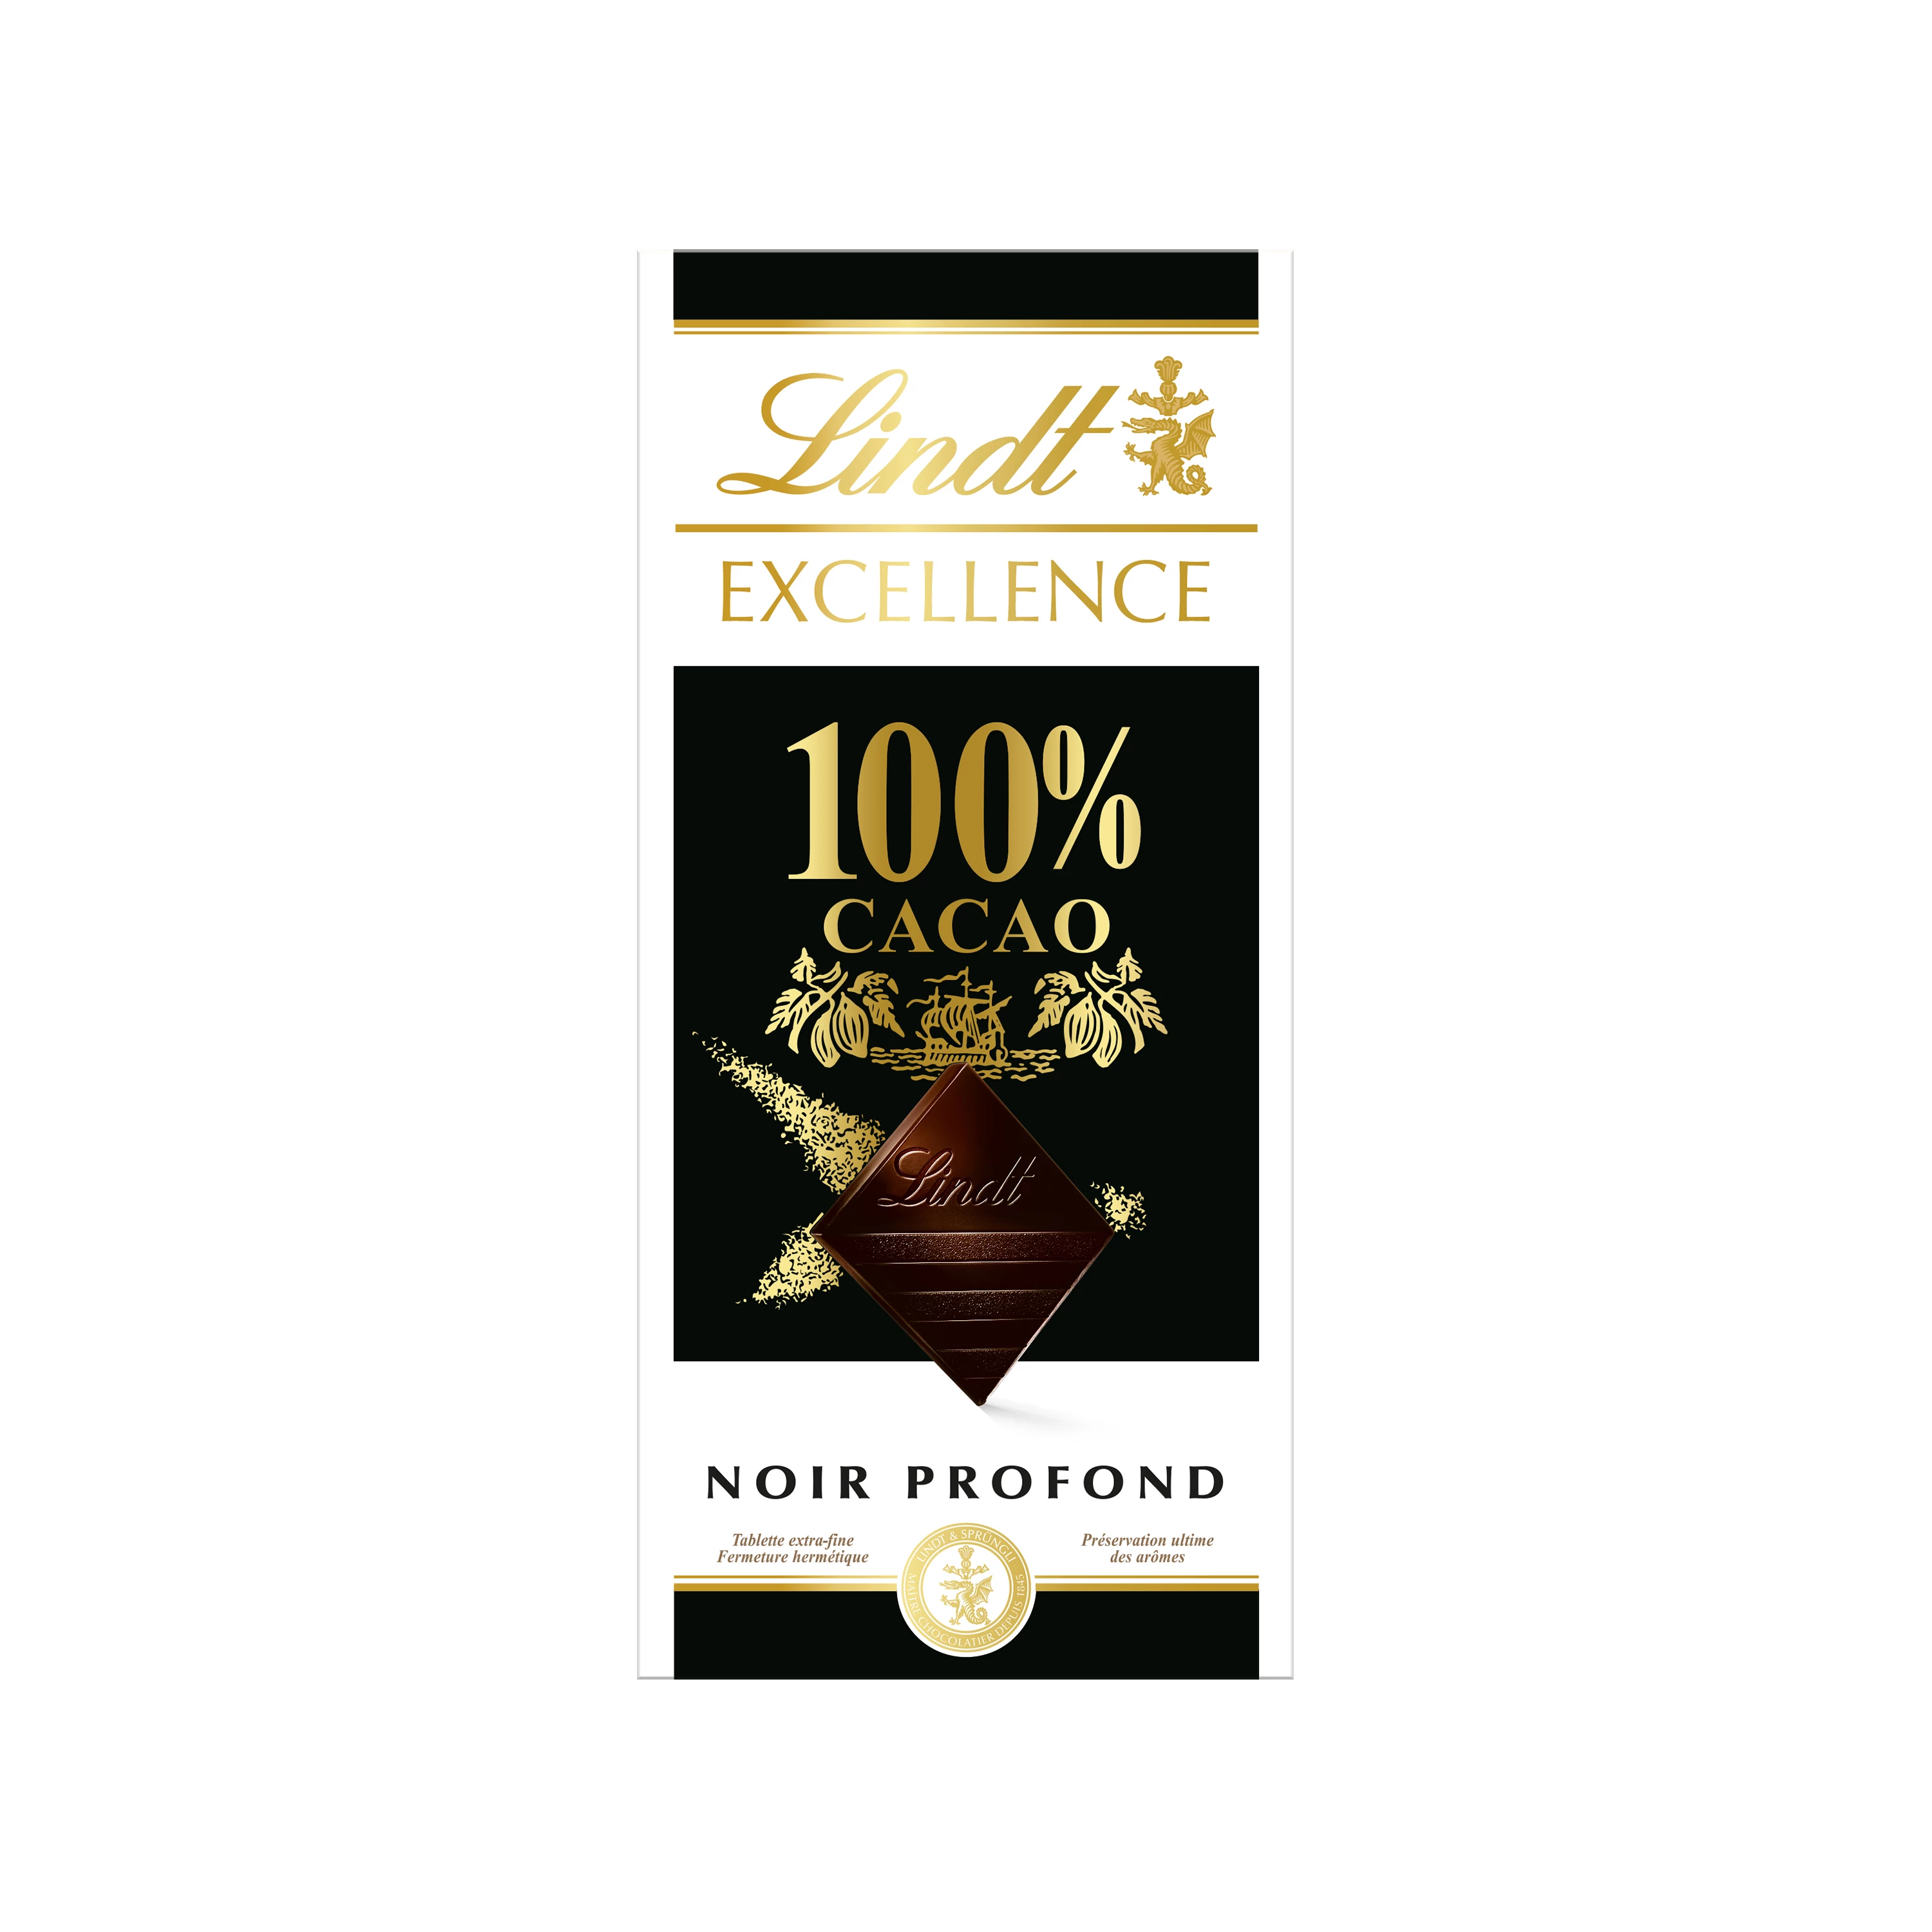 Viên Cacao 100% Excellence Black 50 G - LINDT